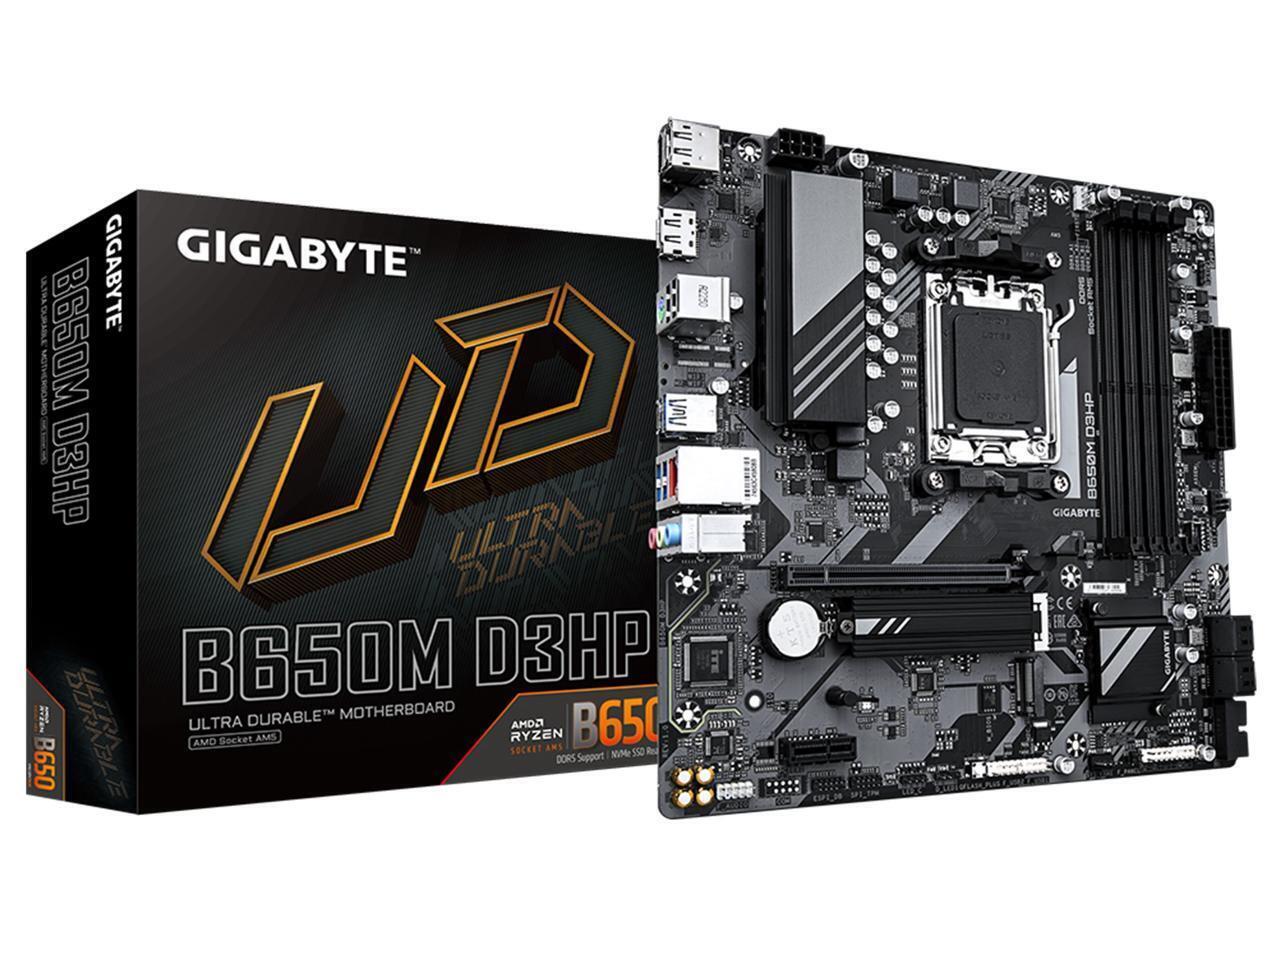 GIGABYTE B650M D3HP AM5 LGA 1718 AMD M-ATX Motherboard with 5-Year Warranty